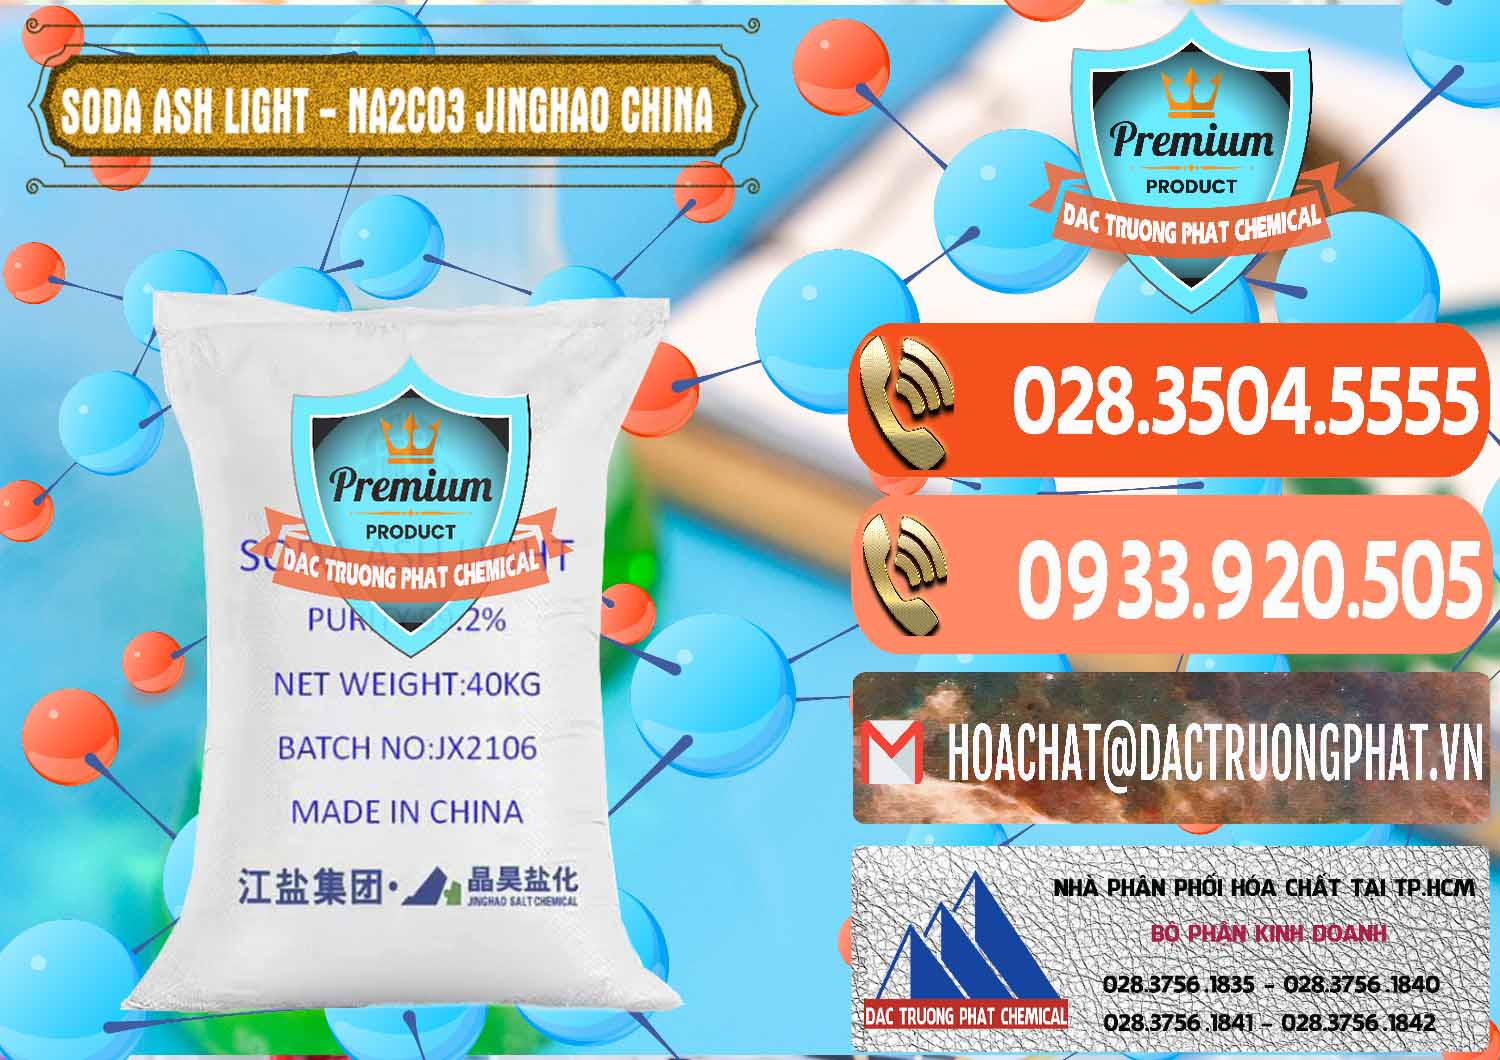 Chuyên phân phối - bán Soda Ash Light - NA2CO3 Jinghao Trung Quốc China - 0339 - Nhà cung ứng - phân phối hóa chất tại TP.HCM - hoachatmientay.com